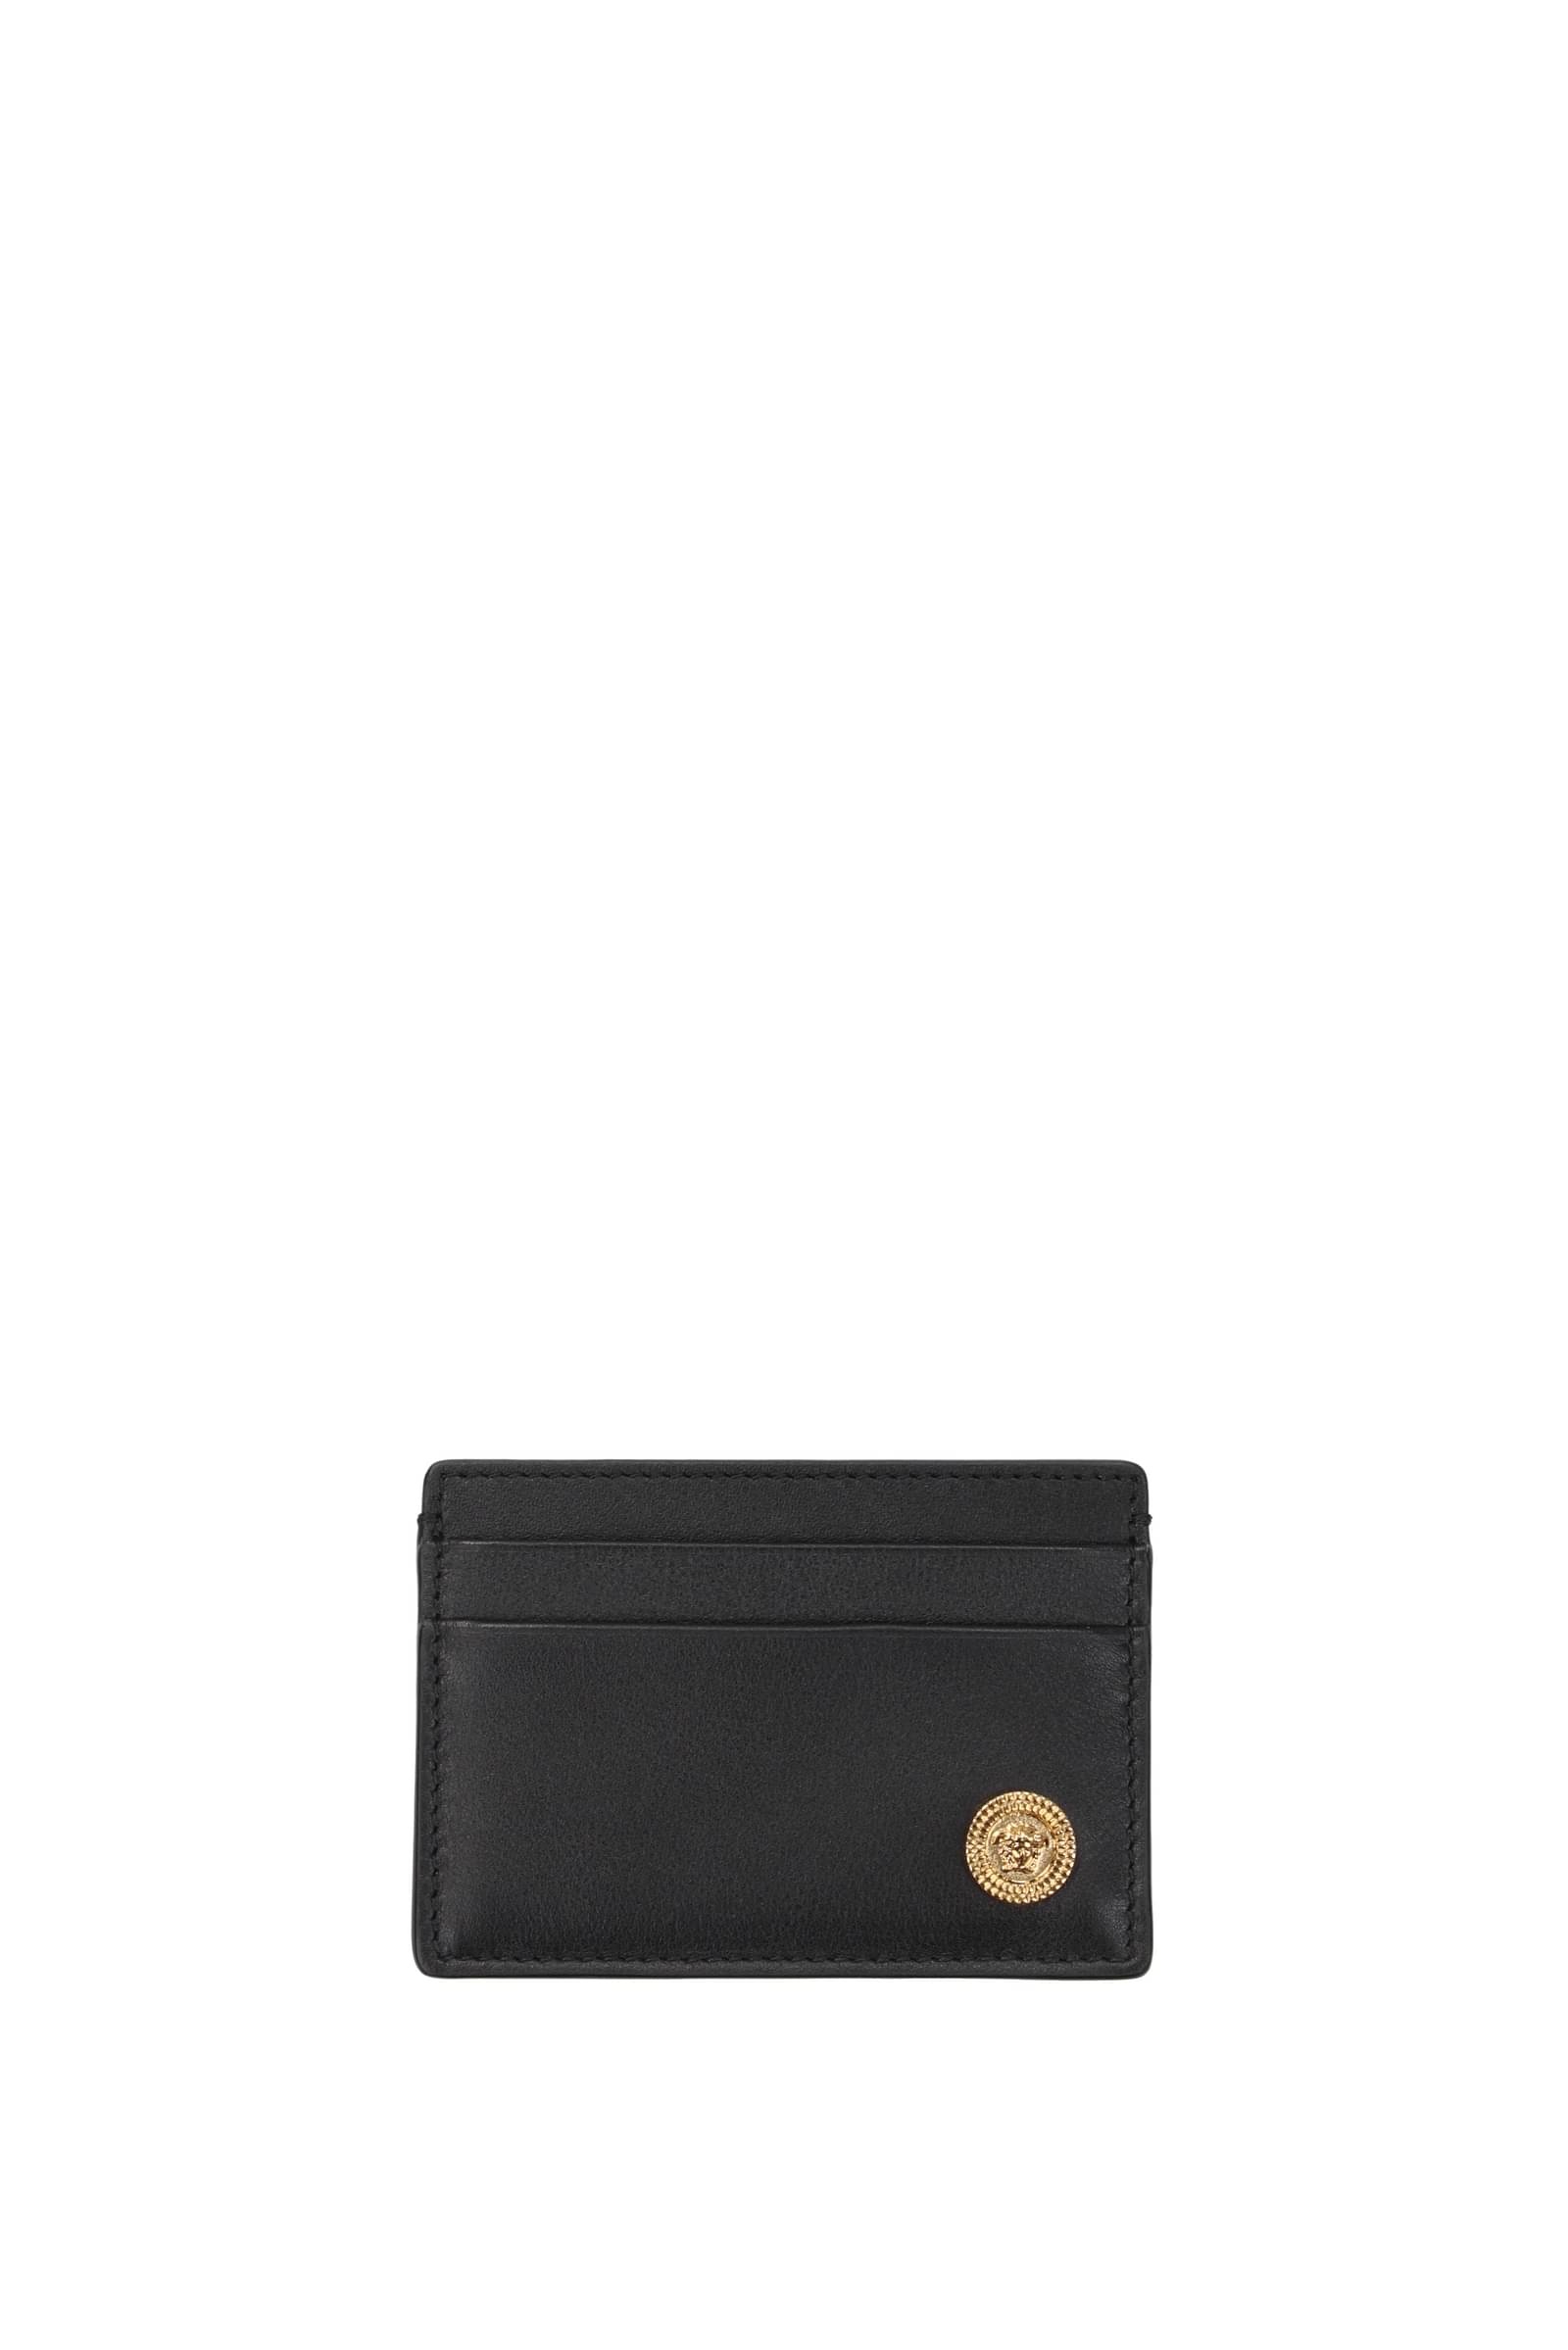 Versace Man Card Holder Man Black Wallets | ModeSens